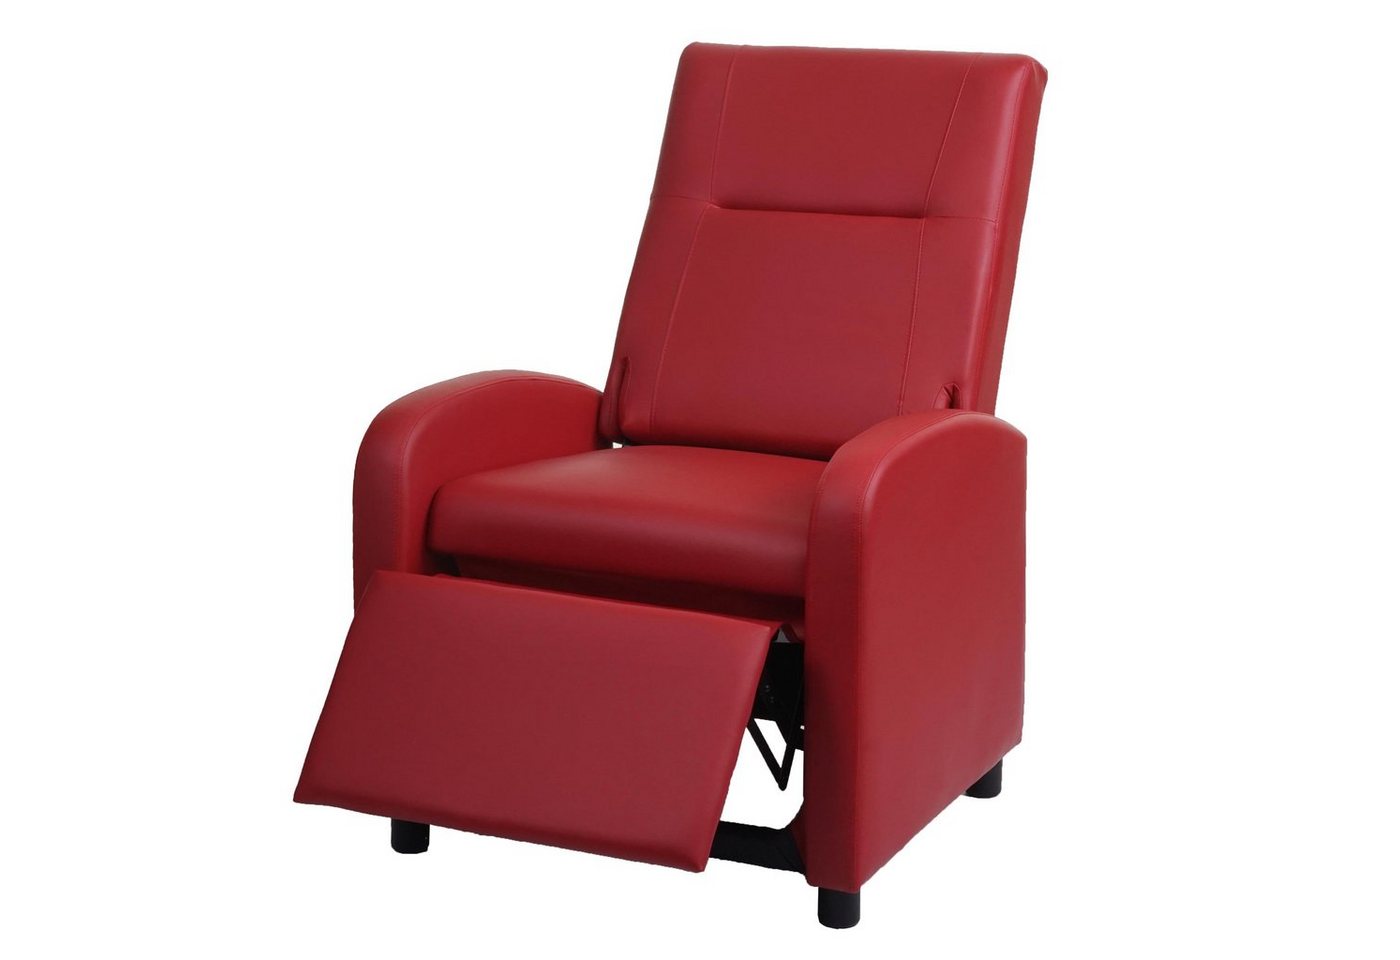 MCW TV-Sessel MCW-H18, Synchrone Verstellung der Rücken- und Fußlehne, Synchrone Verstellung der Rücken- und Fußlehne, Klappbare Rückenlehne von MCW